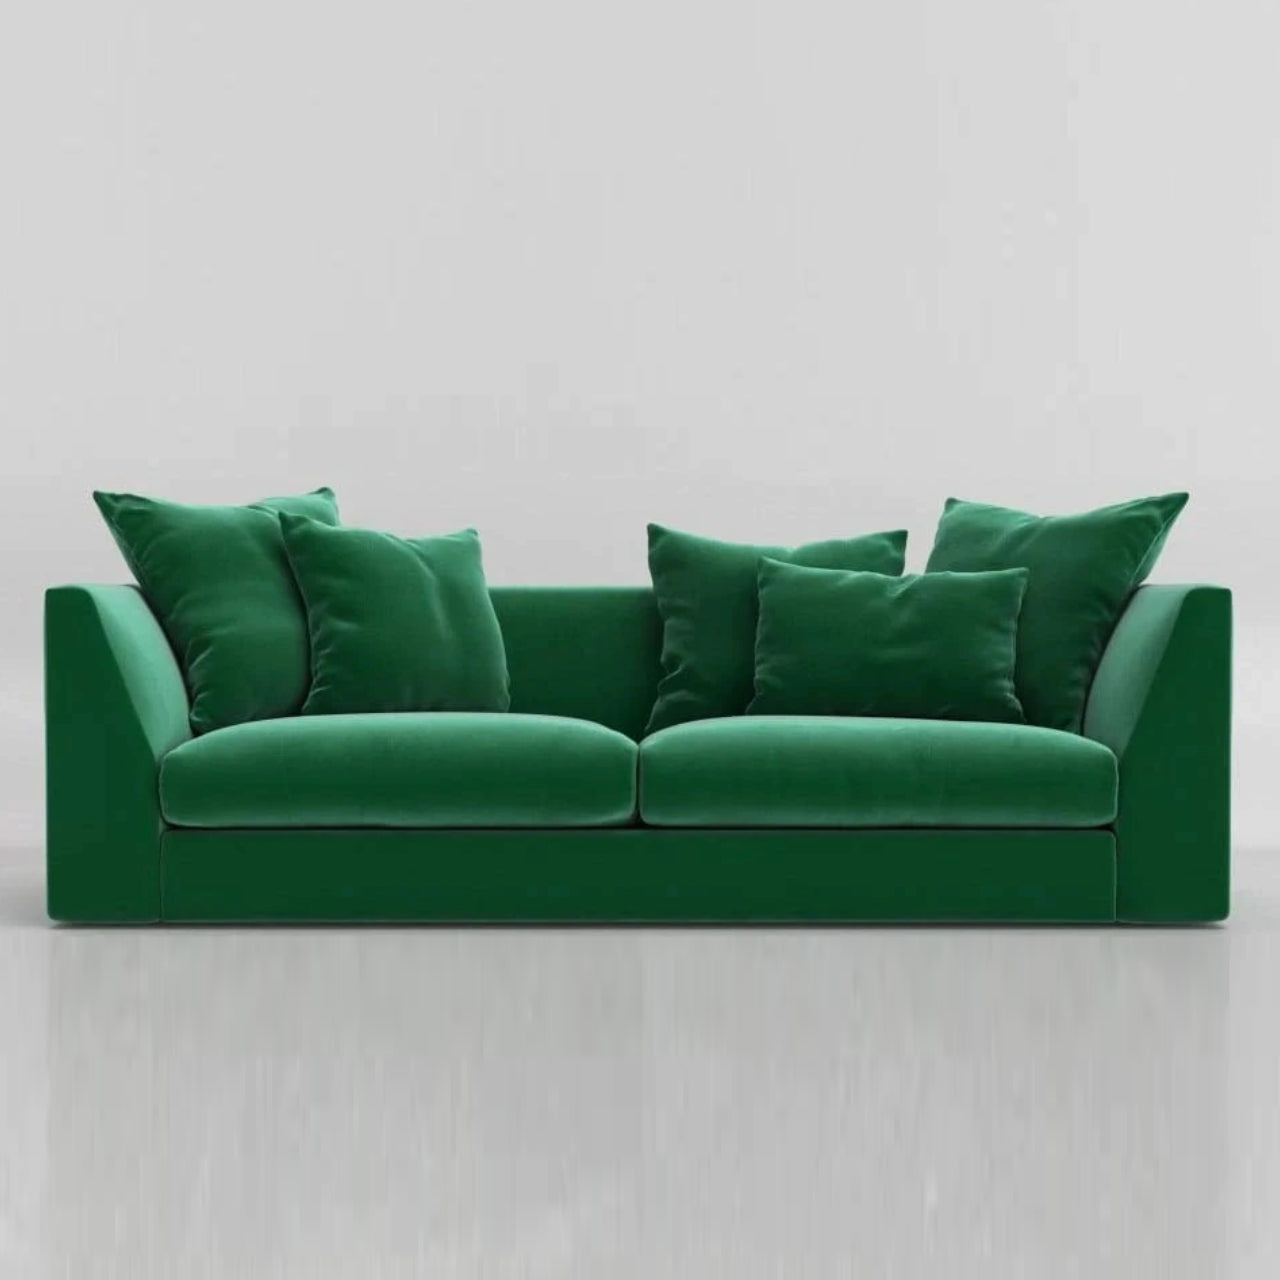 3 Seater Sofa: Ultra Fabric Sofa Set